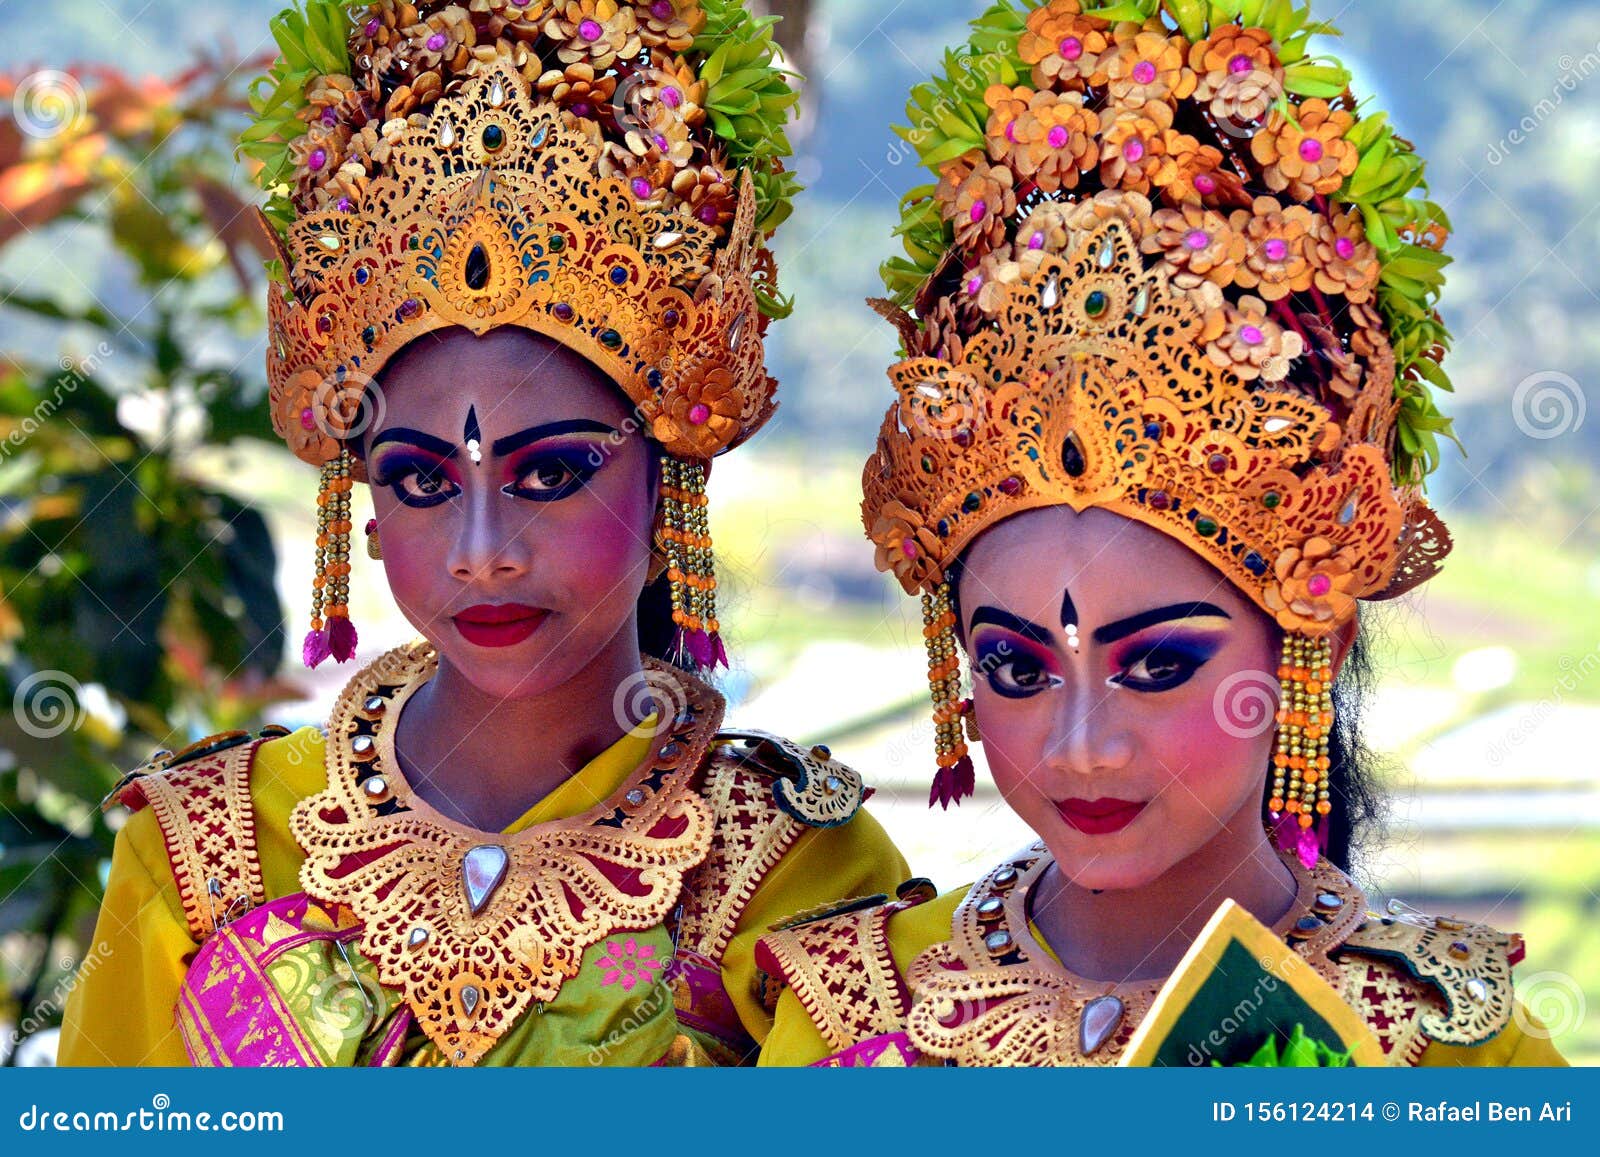 Balinese Women Dancing Tari  Pendet Dance In Bali  Indonesia 